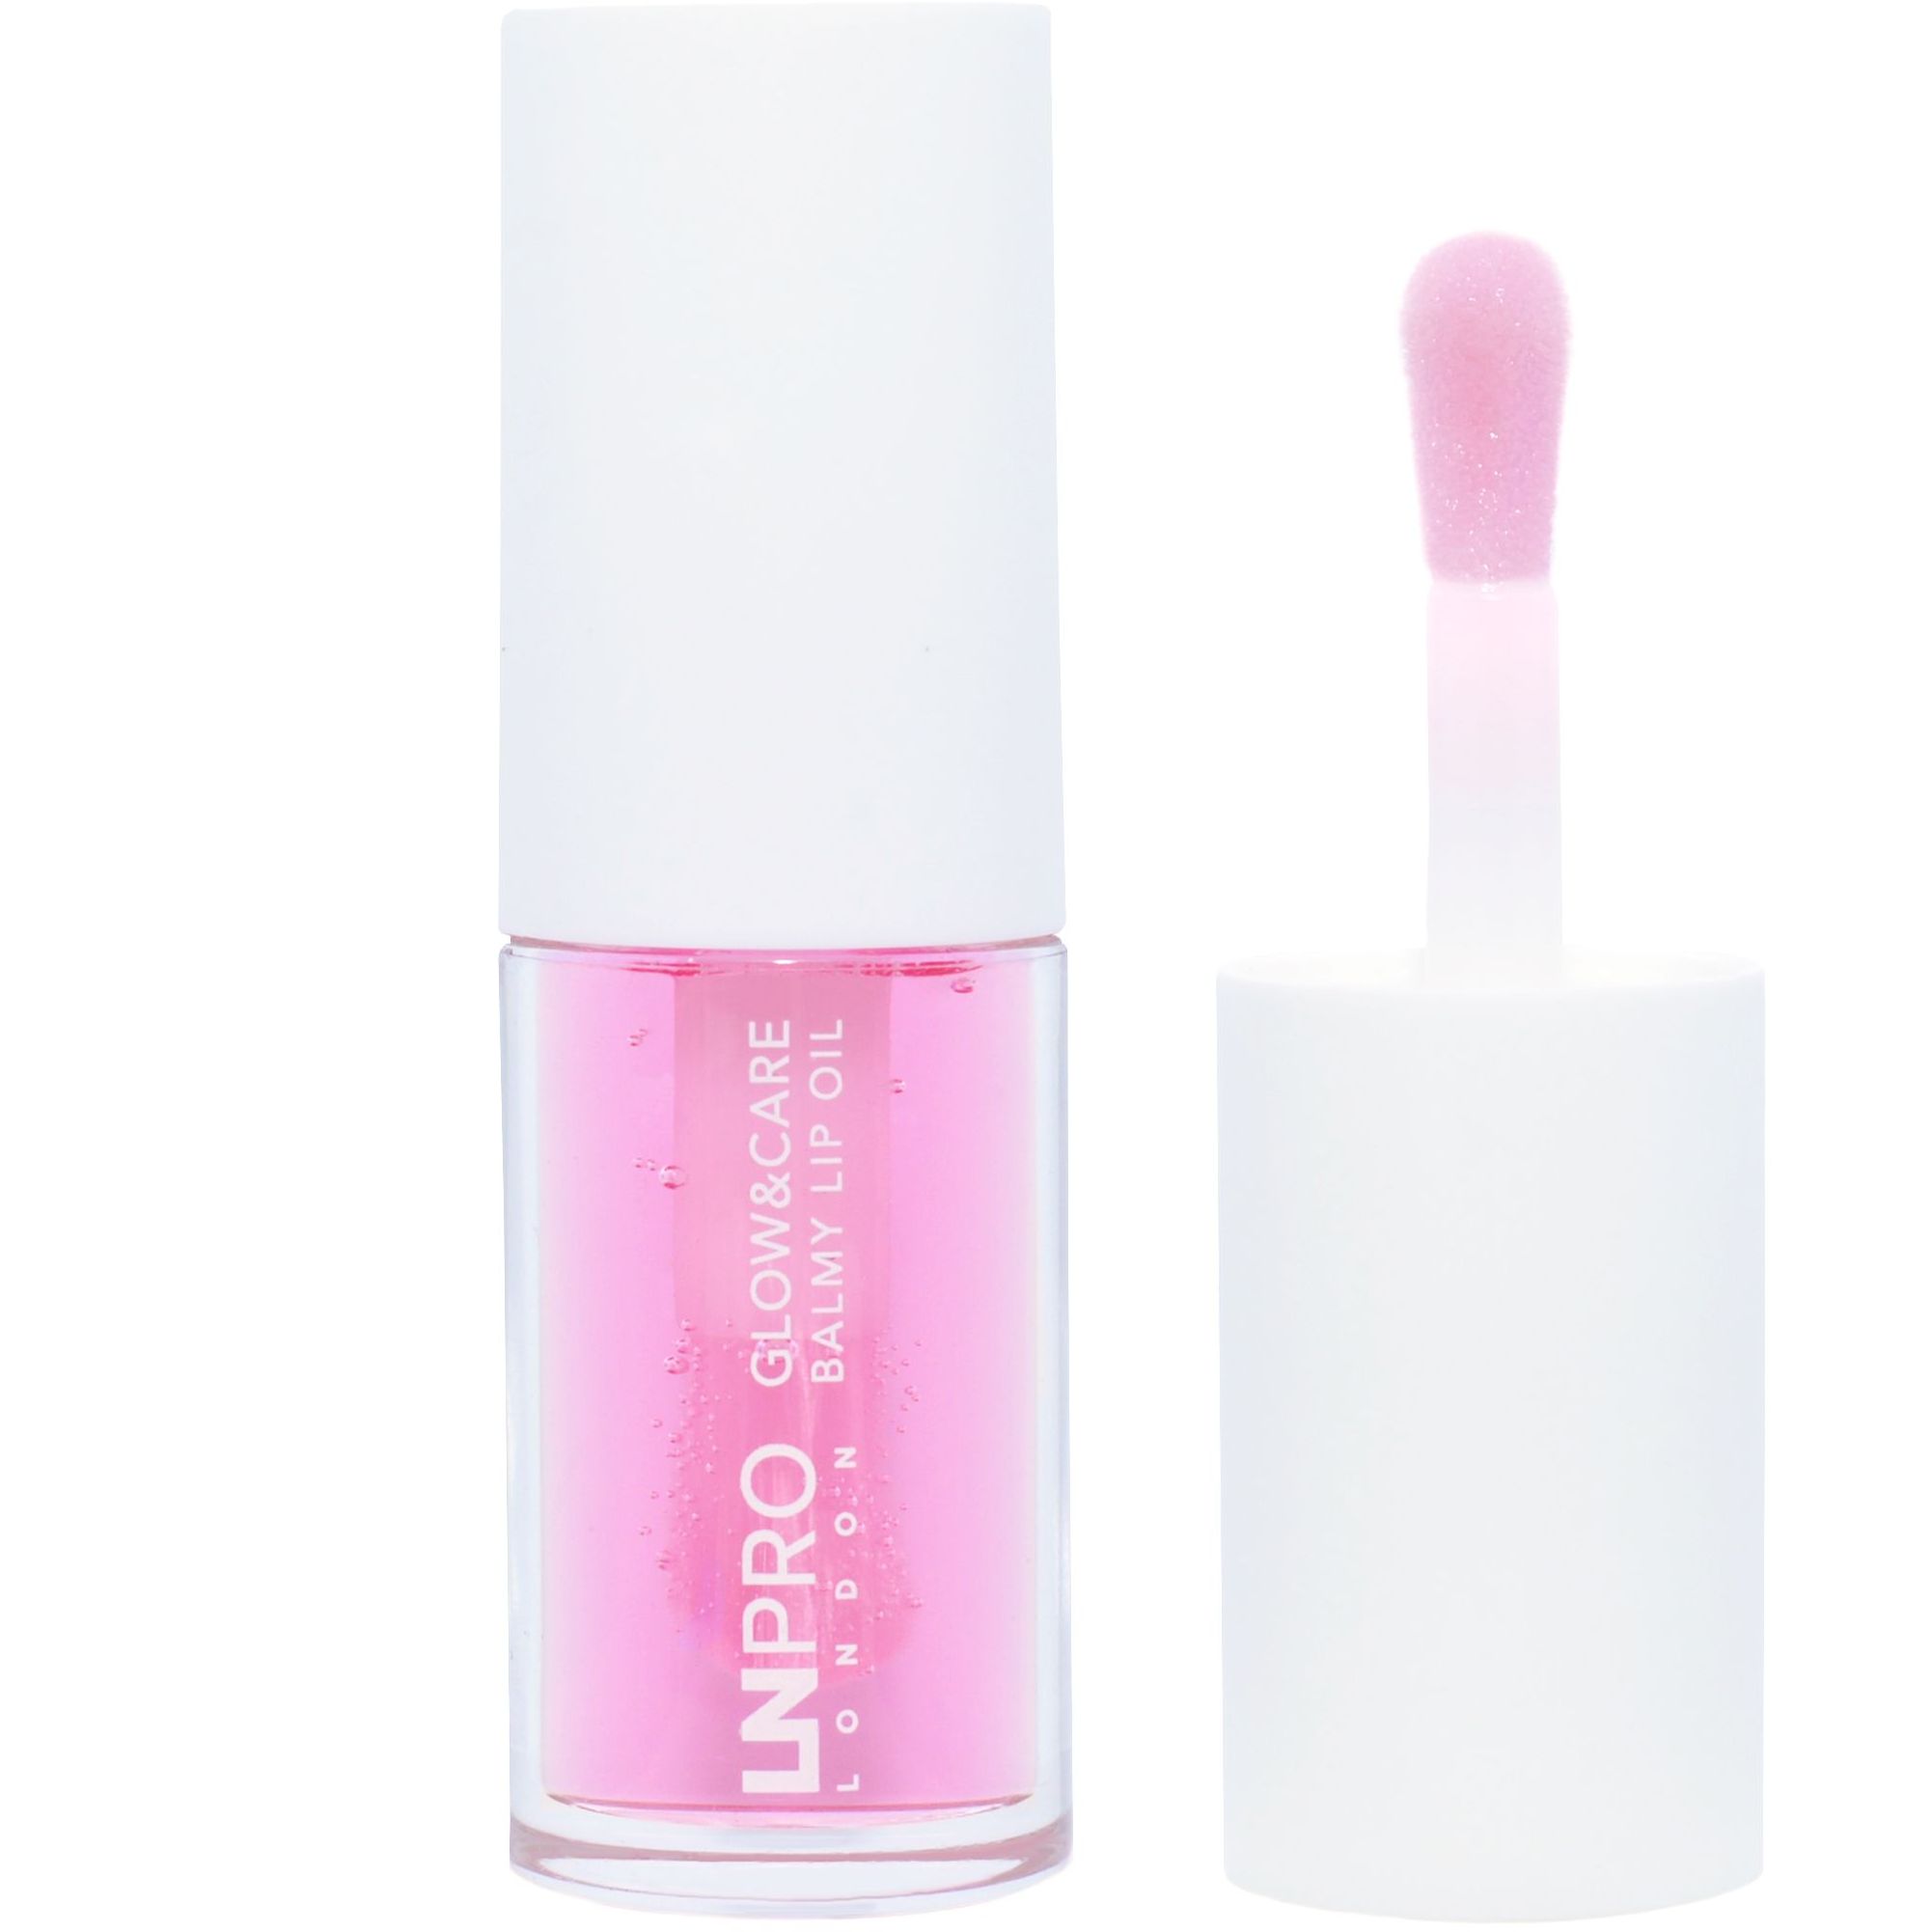 Масло-бальзам для губ LN Pro Glow & Care Balmy Lip Oil тон 103, 3.7 мл - фото 1